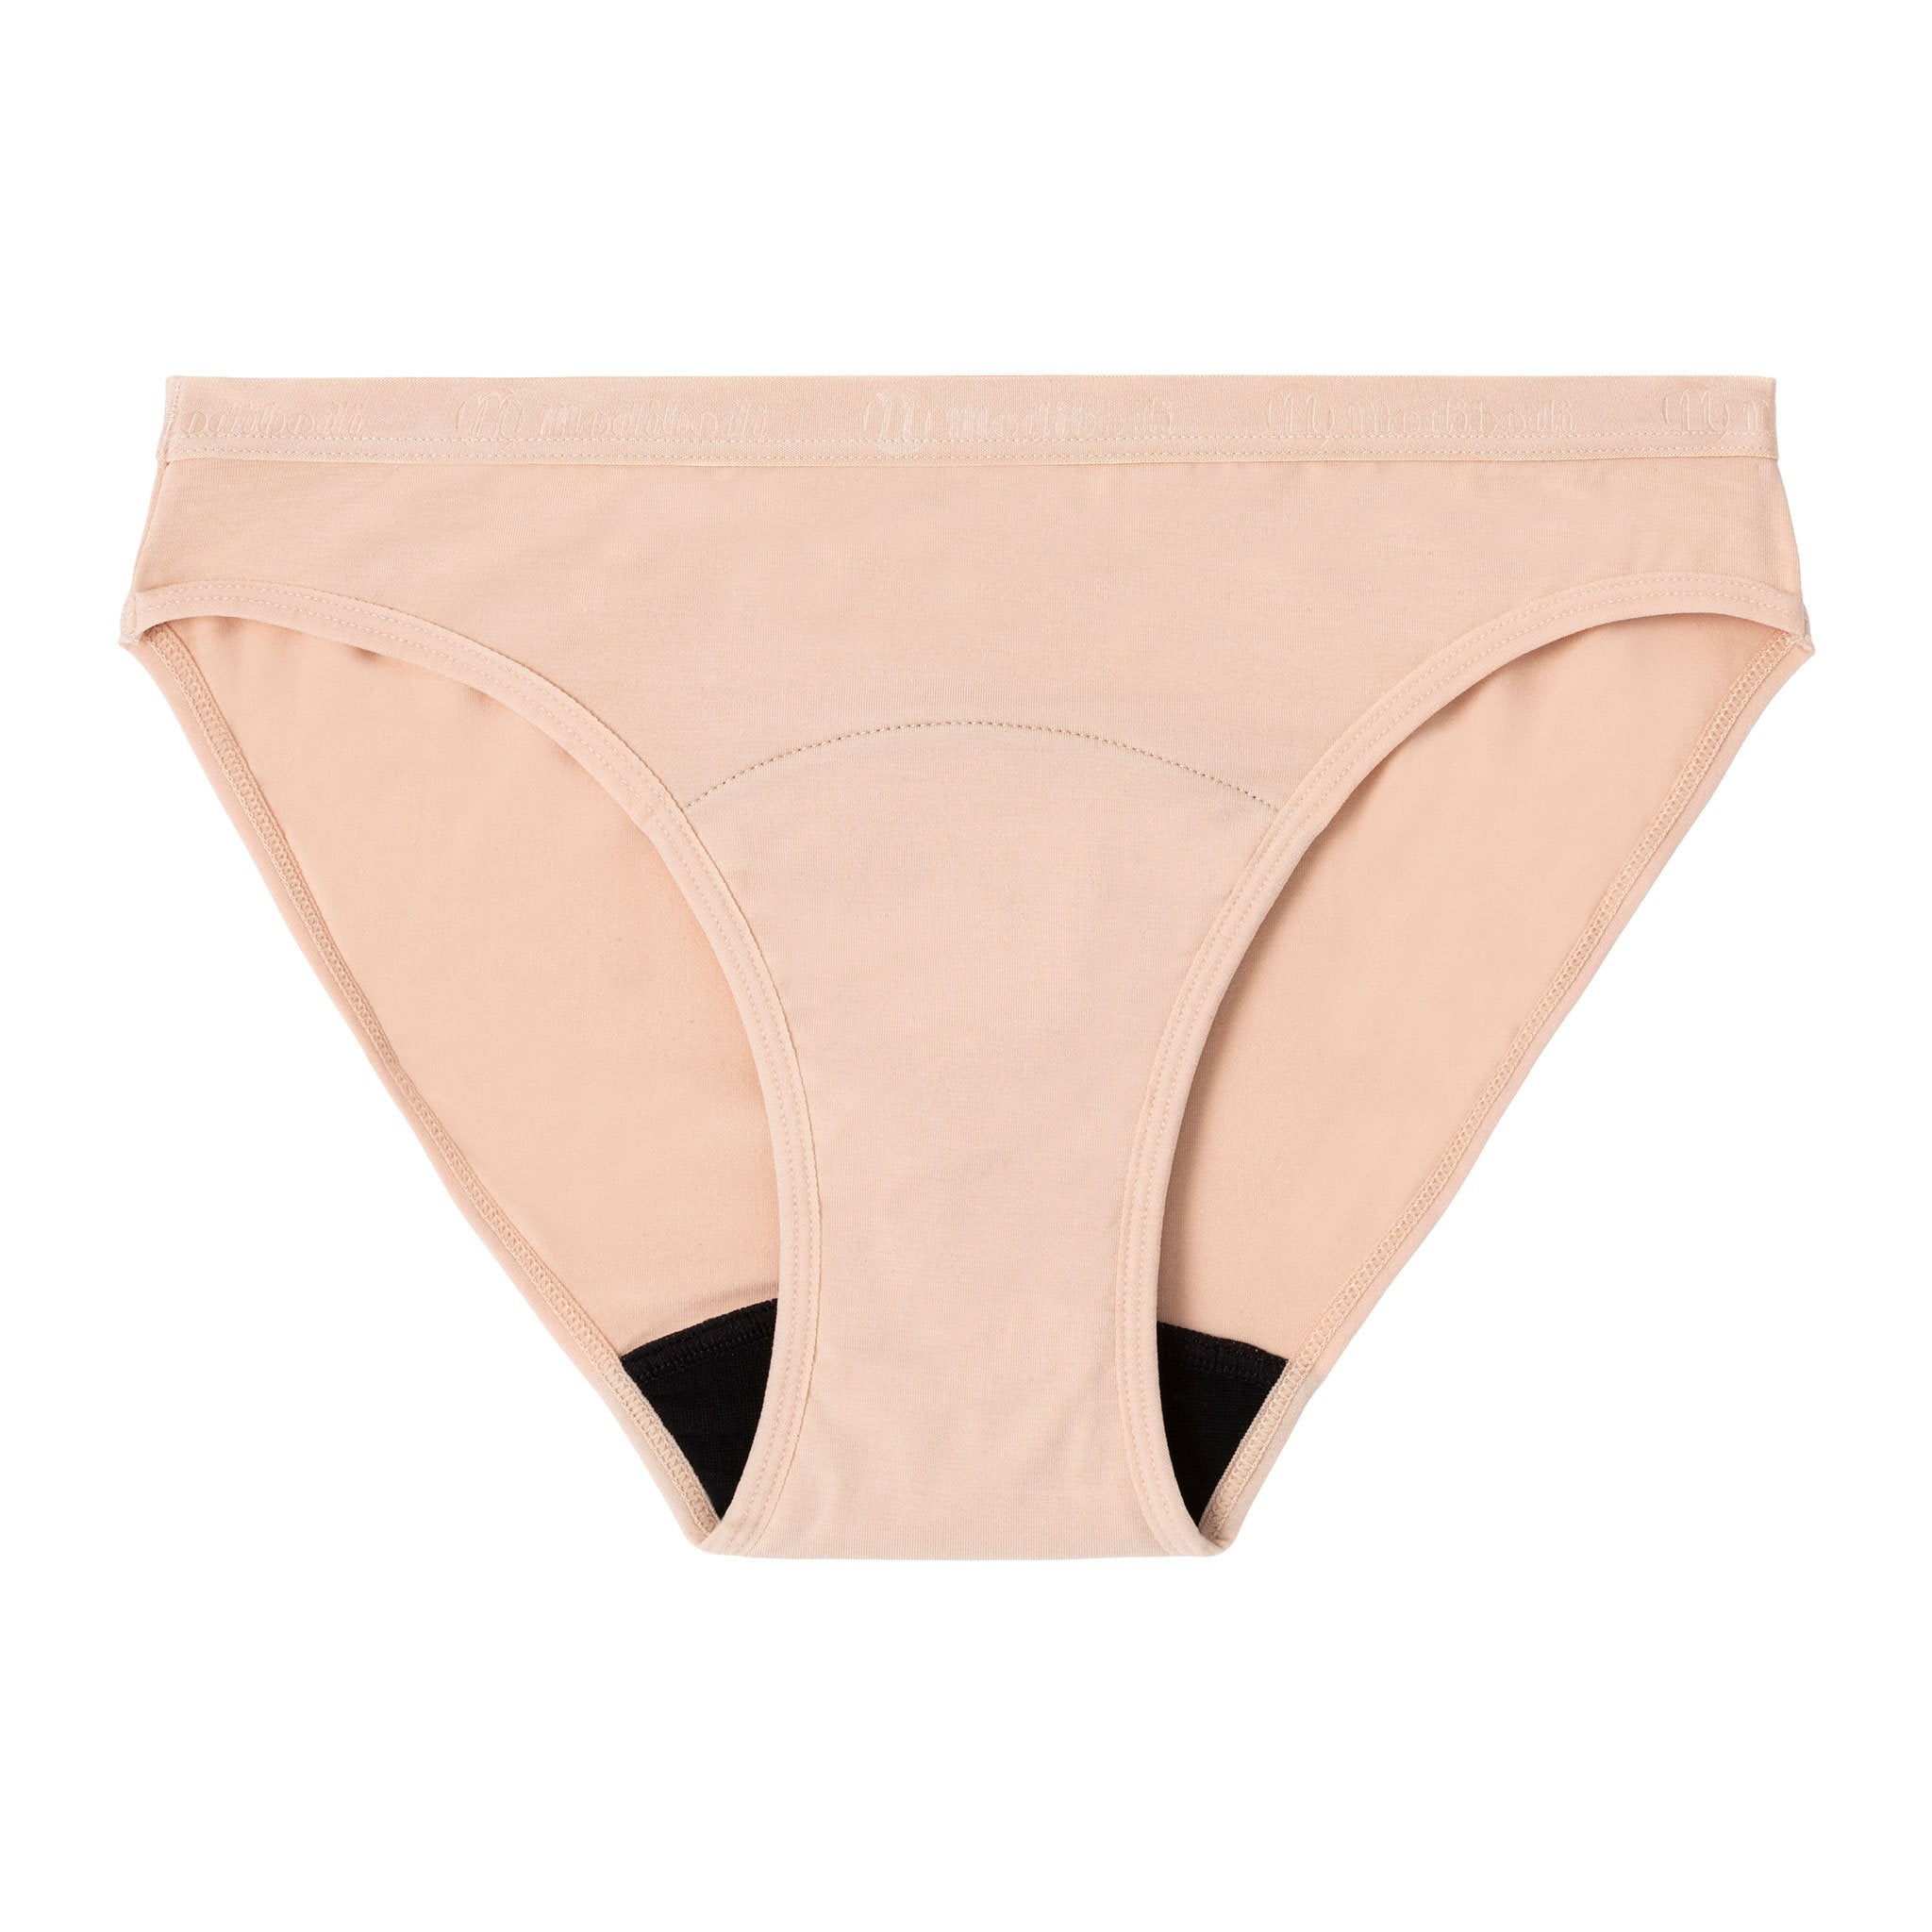 Classic Bikini Period & Leak-proof Underwear (Absorbency Light